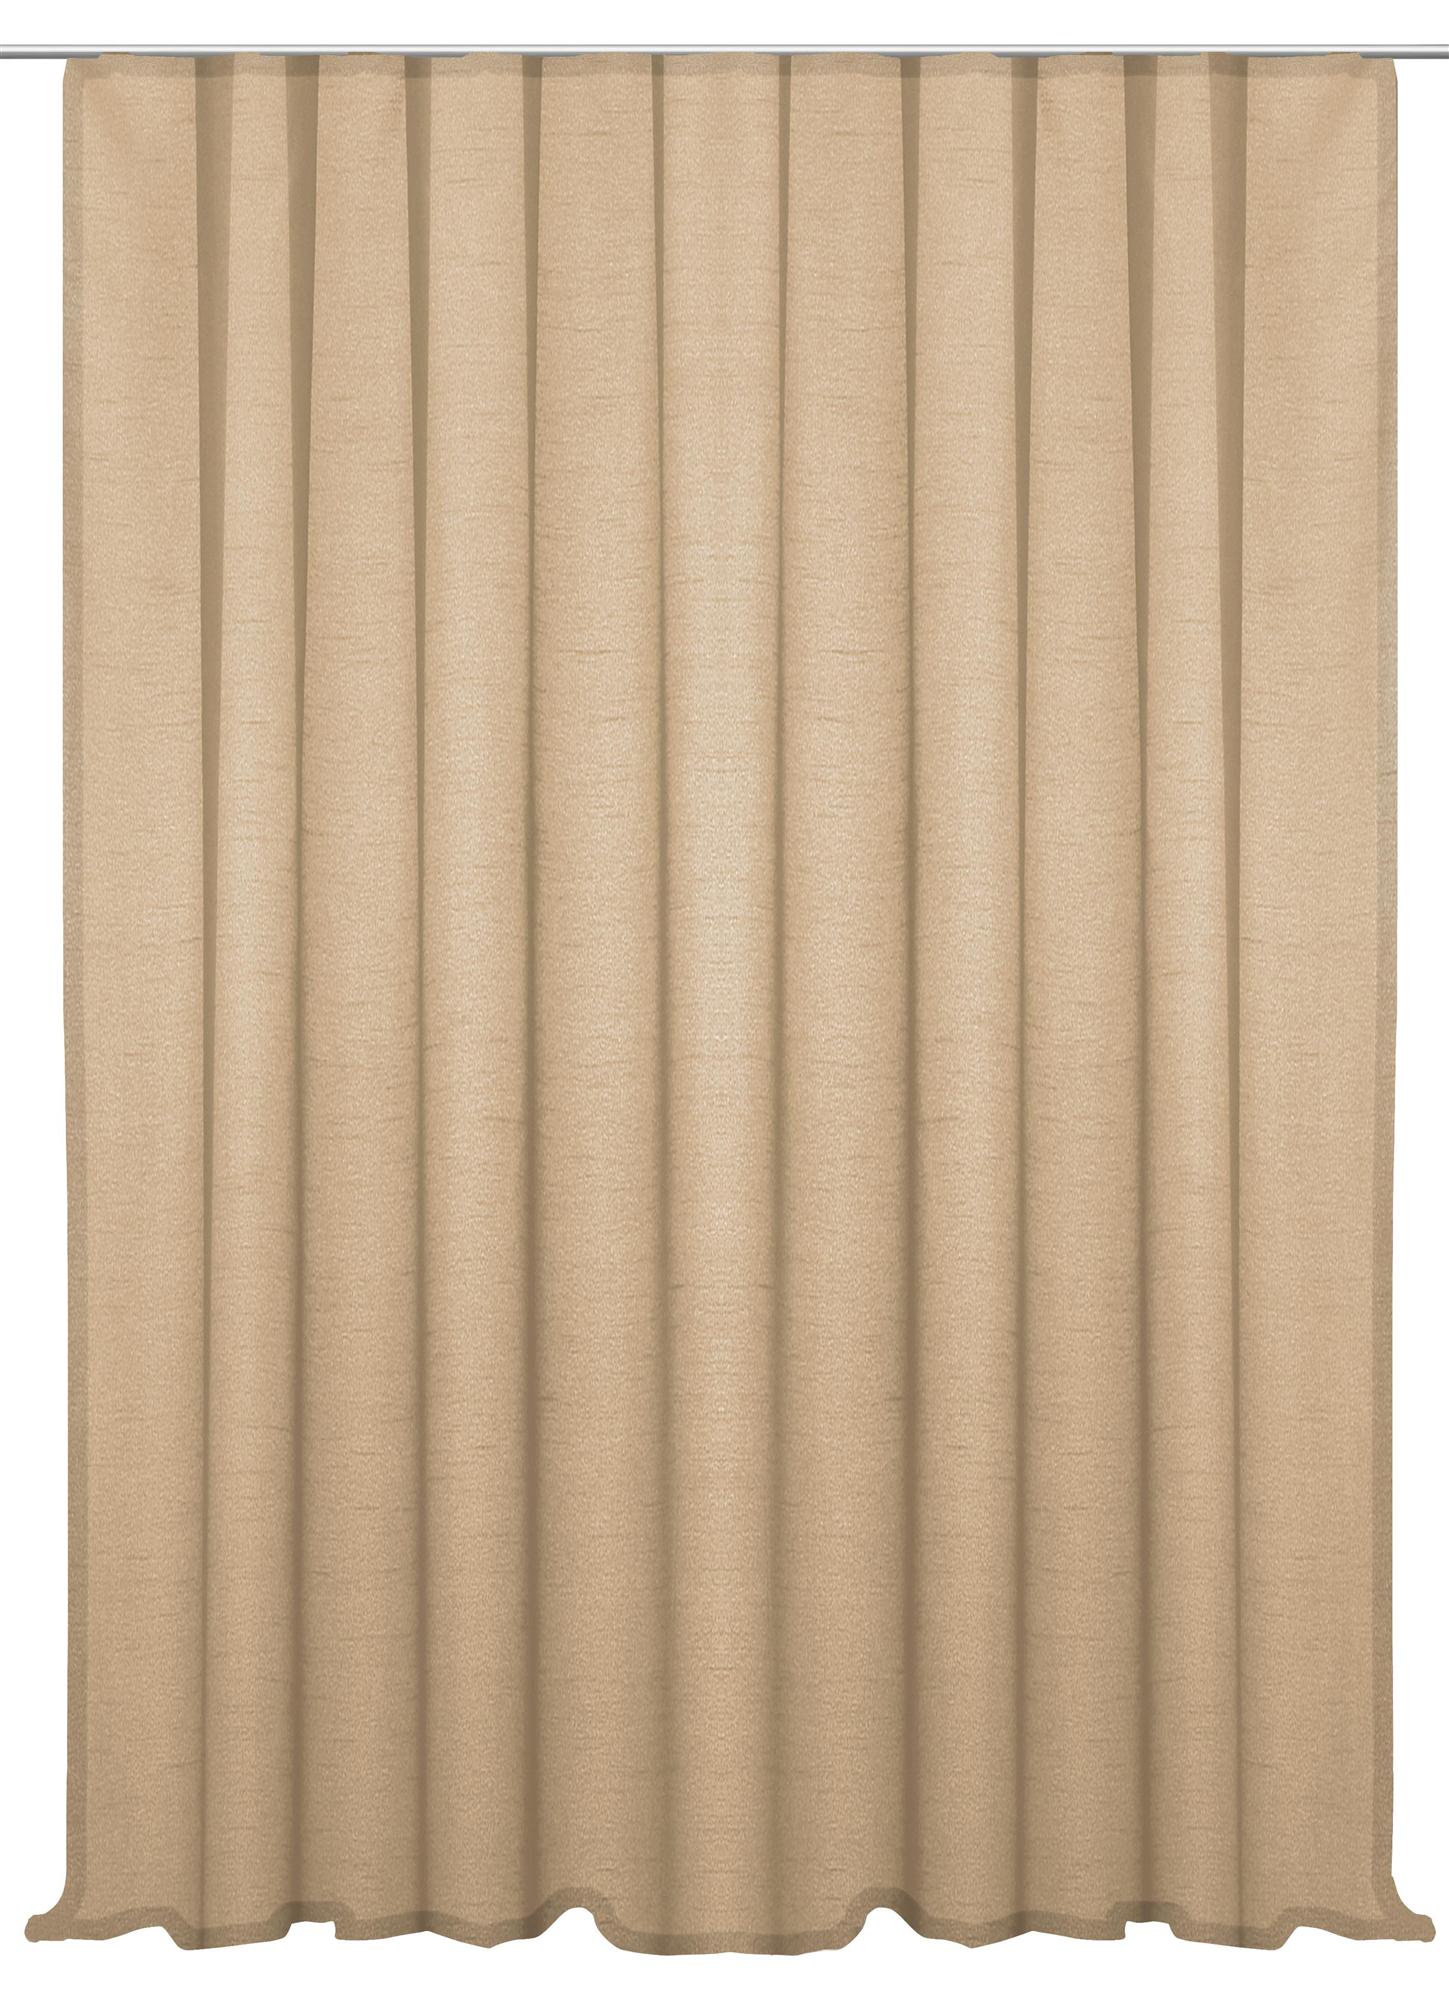 Vorhang Kräuselband 300x245 cm sand beige